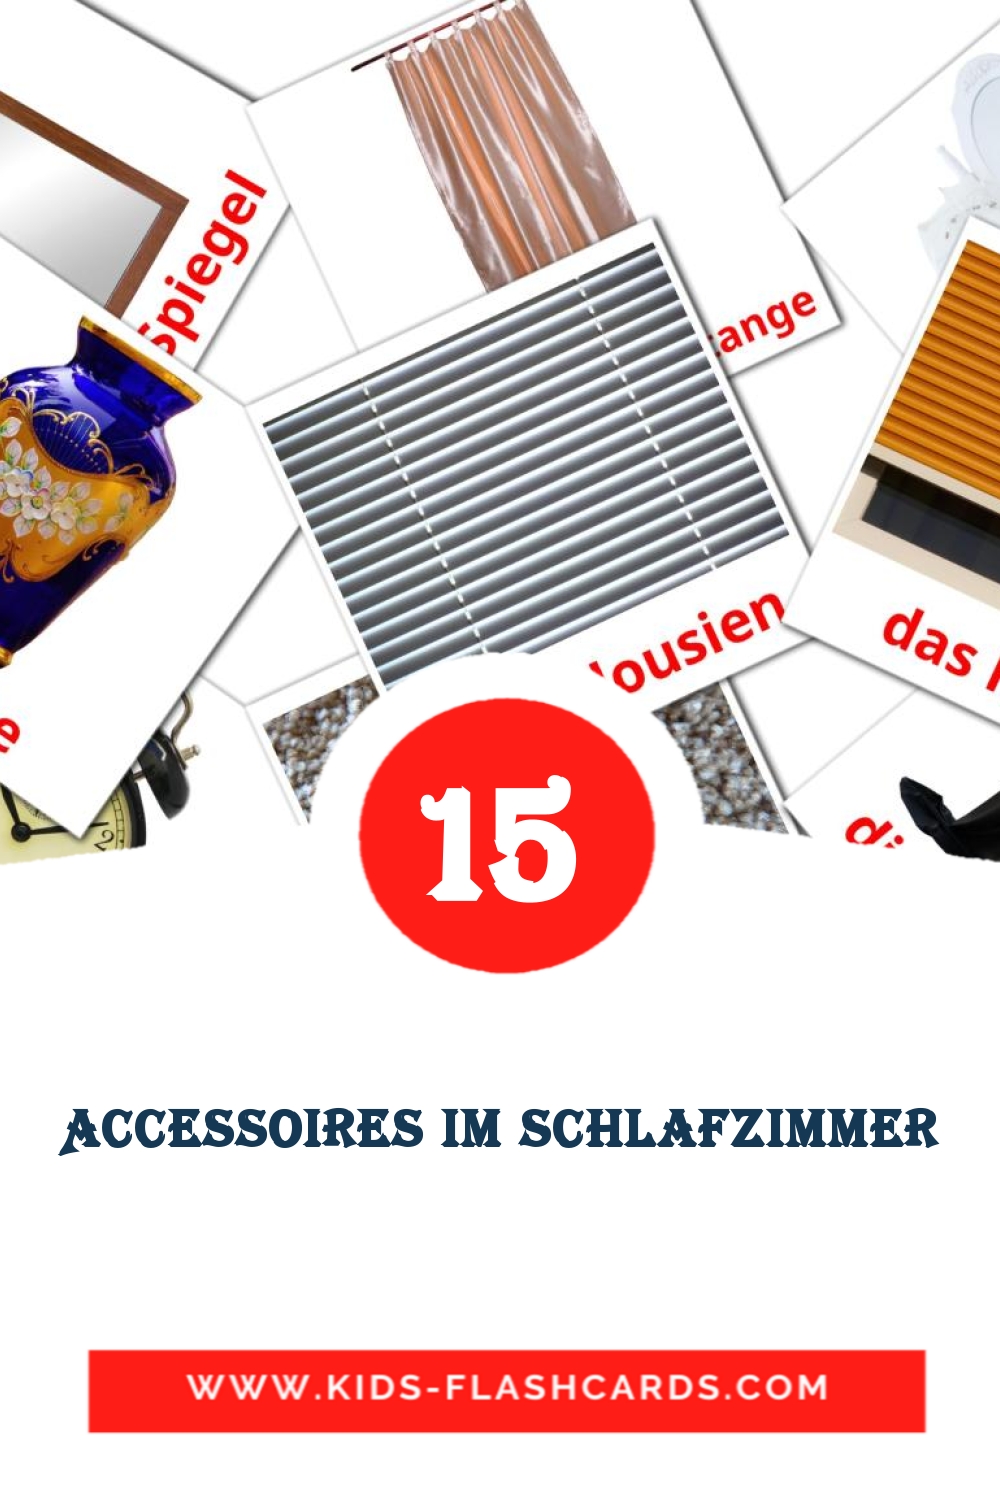 18 tarjetas didacticas de Accessoires im Schlafzimmer para el jardín de infancia en alemán